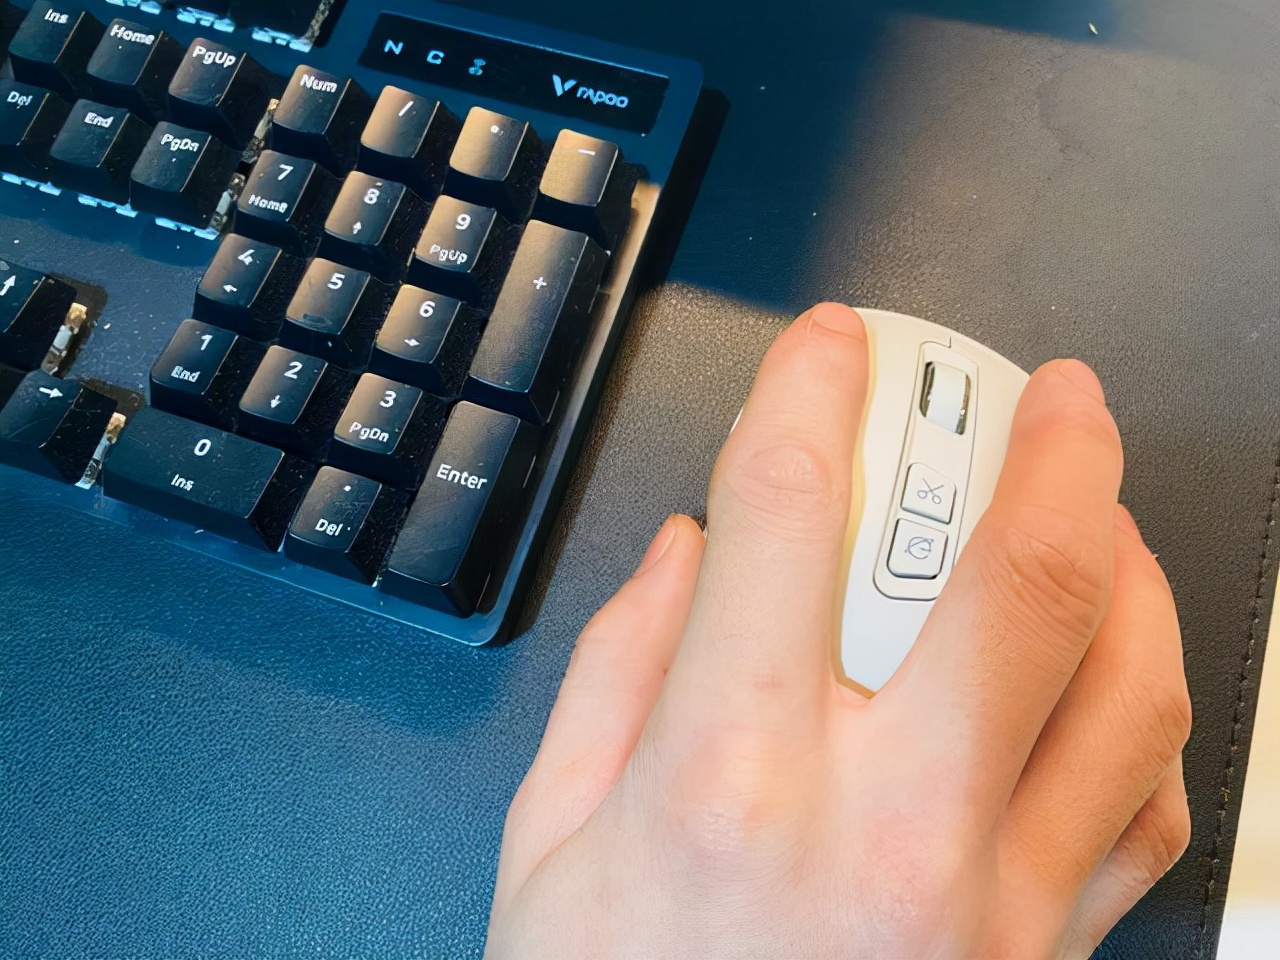 解放双手，提高效率，咪鼠语音智能鼠标M5实测